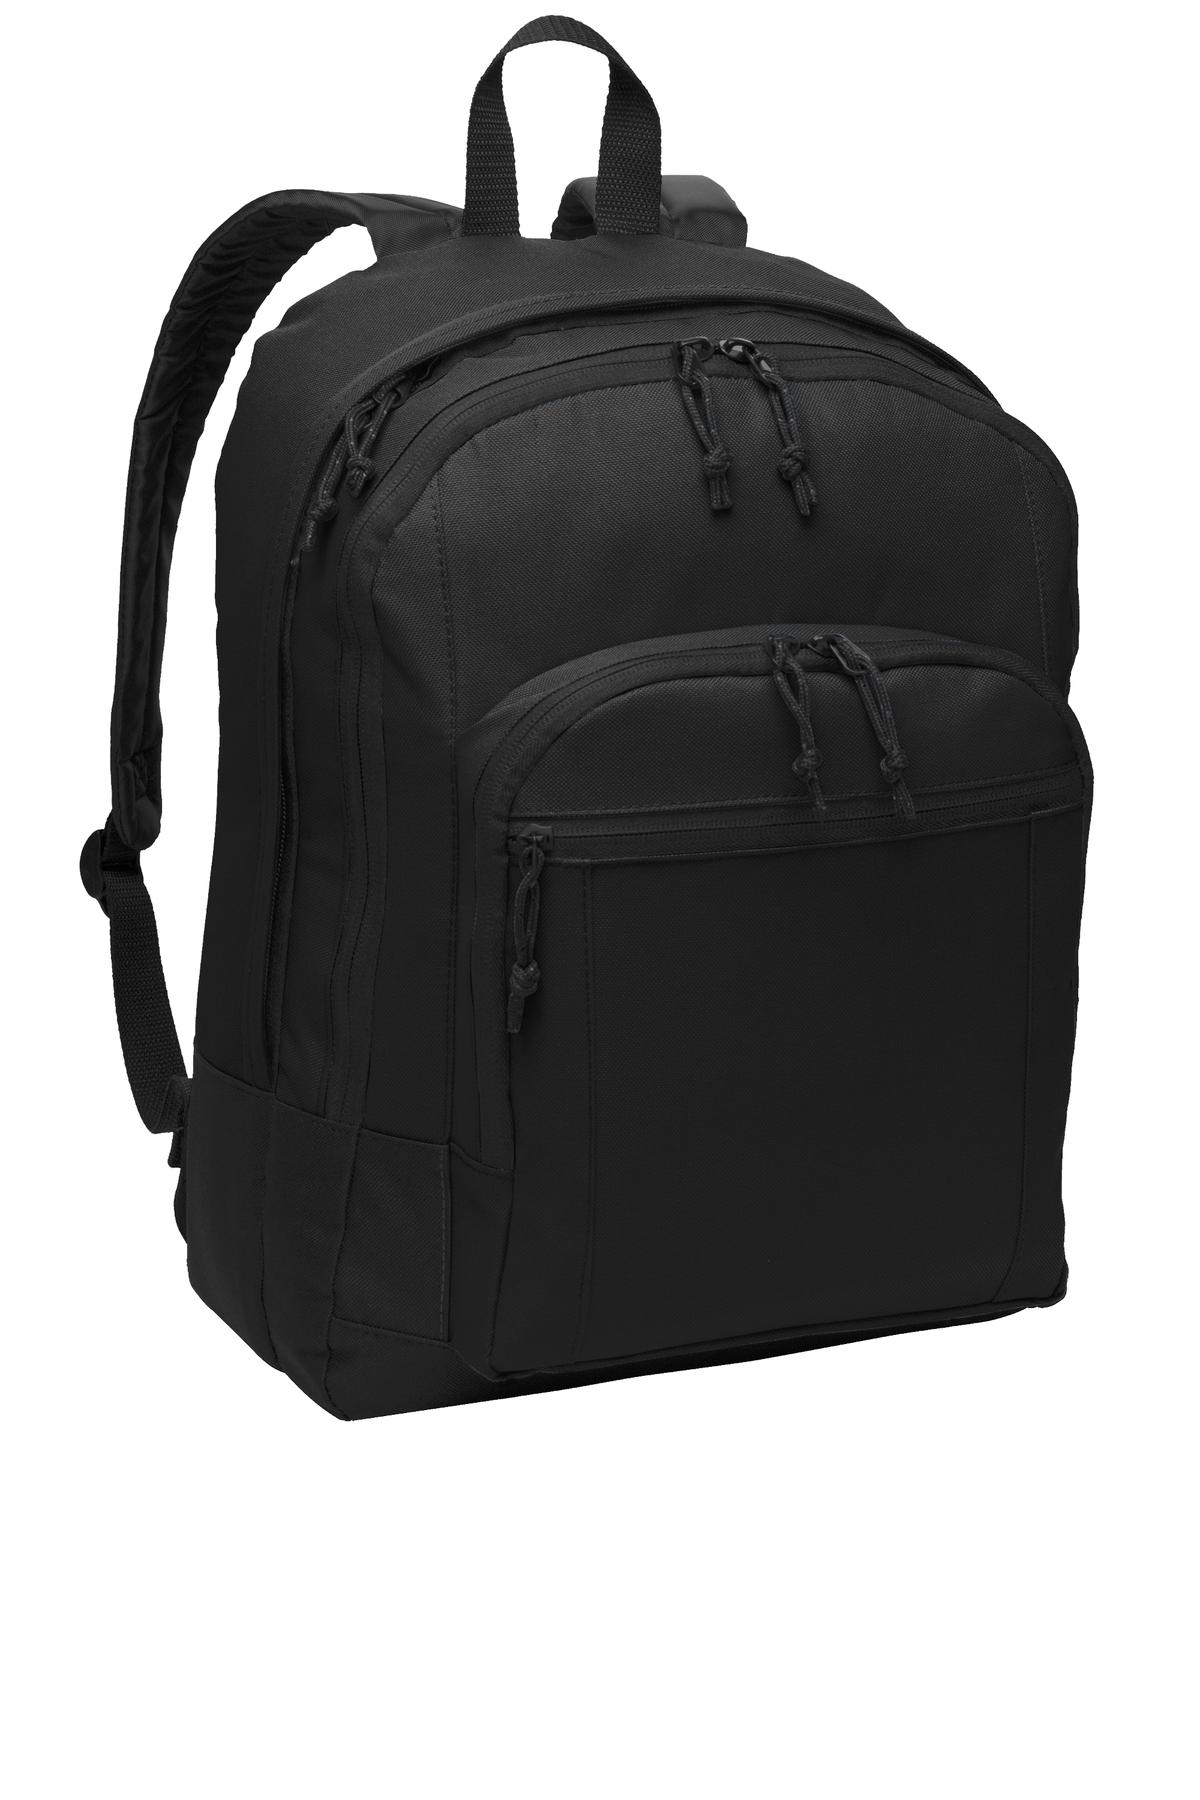 Port Authority Basic Backpack-Port Authority